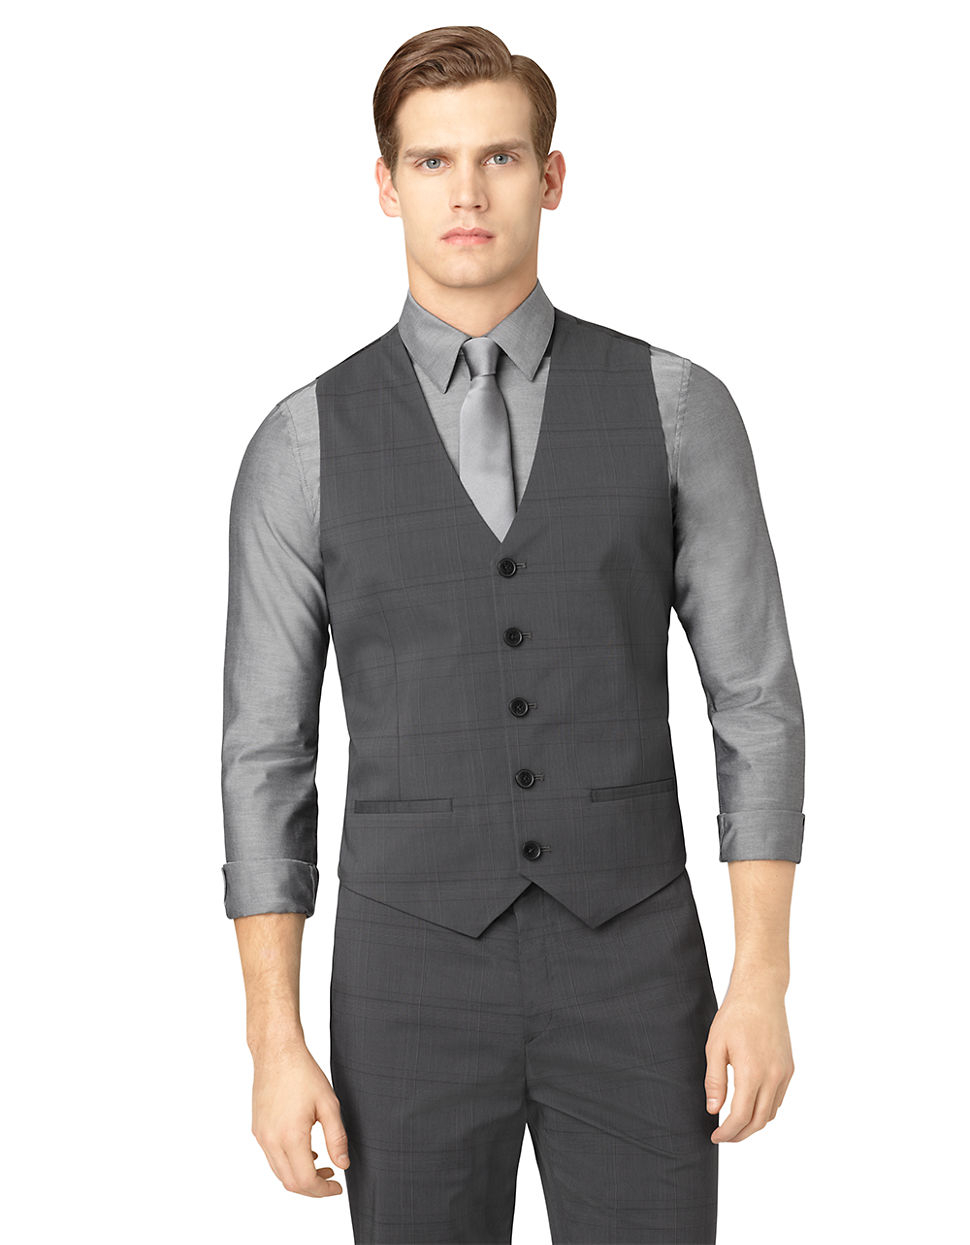 Lyst - Calvin Klein Classic Fit Tonal Plaid Woven Suit Vest in Gray for Men